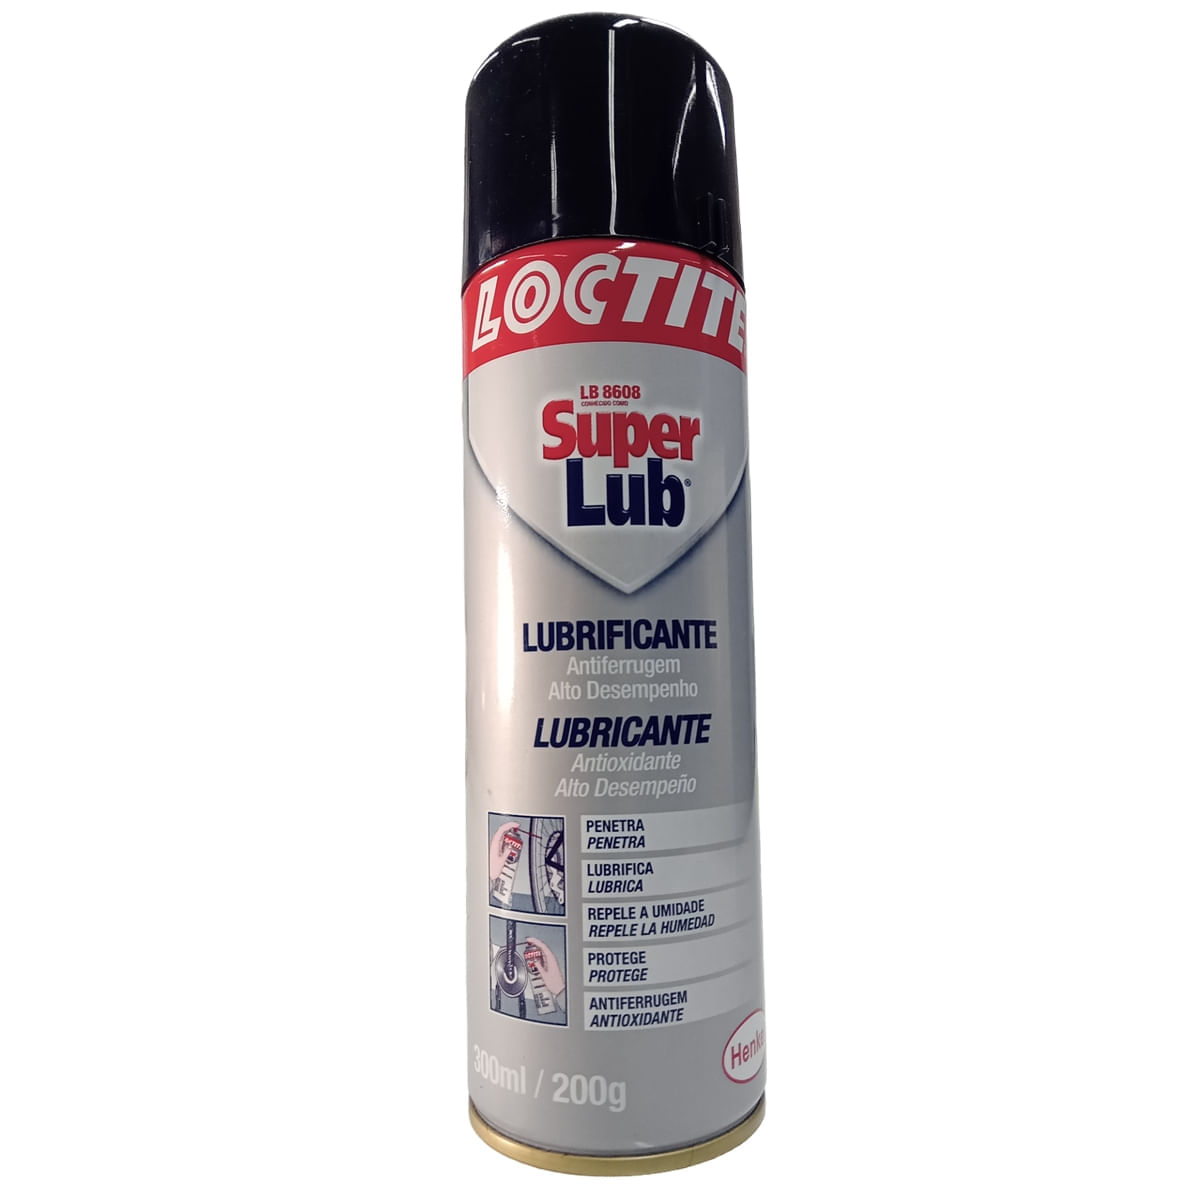 Lubrificante Spray SuperLub Loctite 300ml/200g